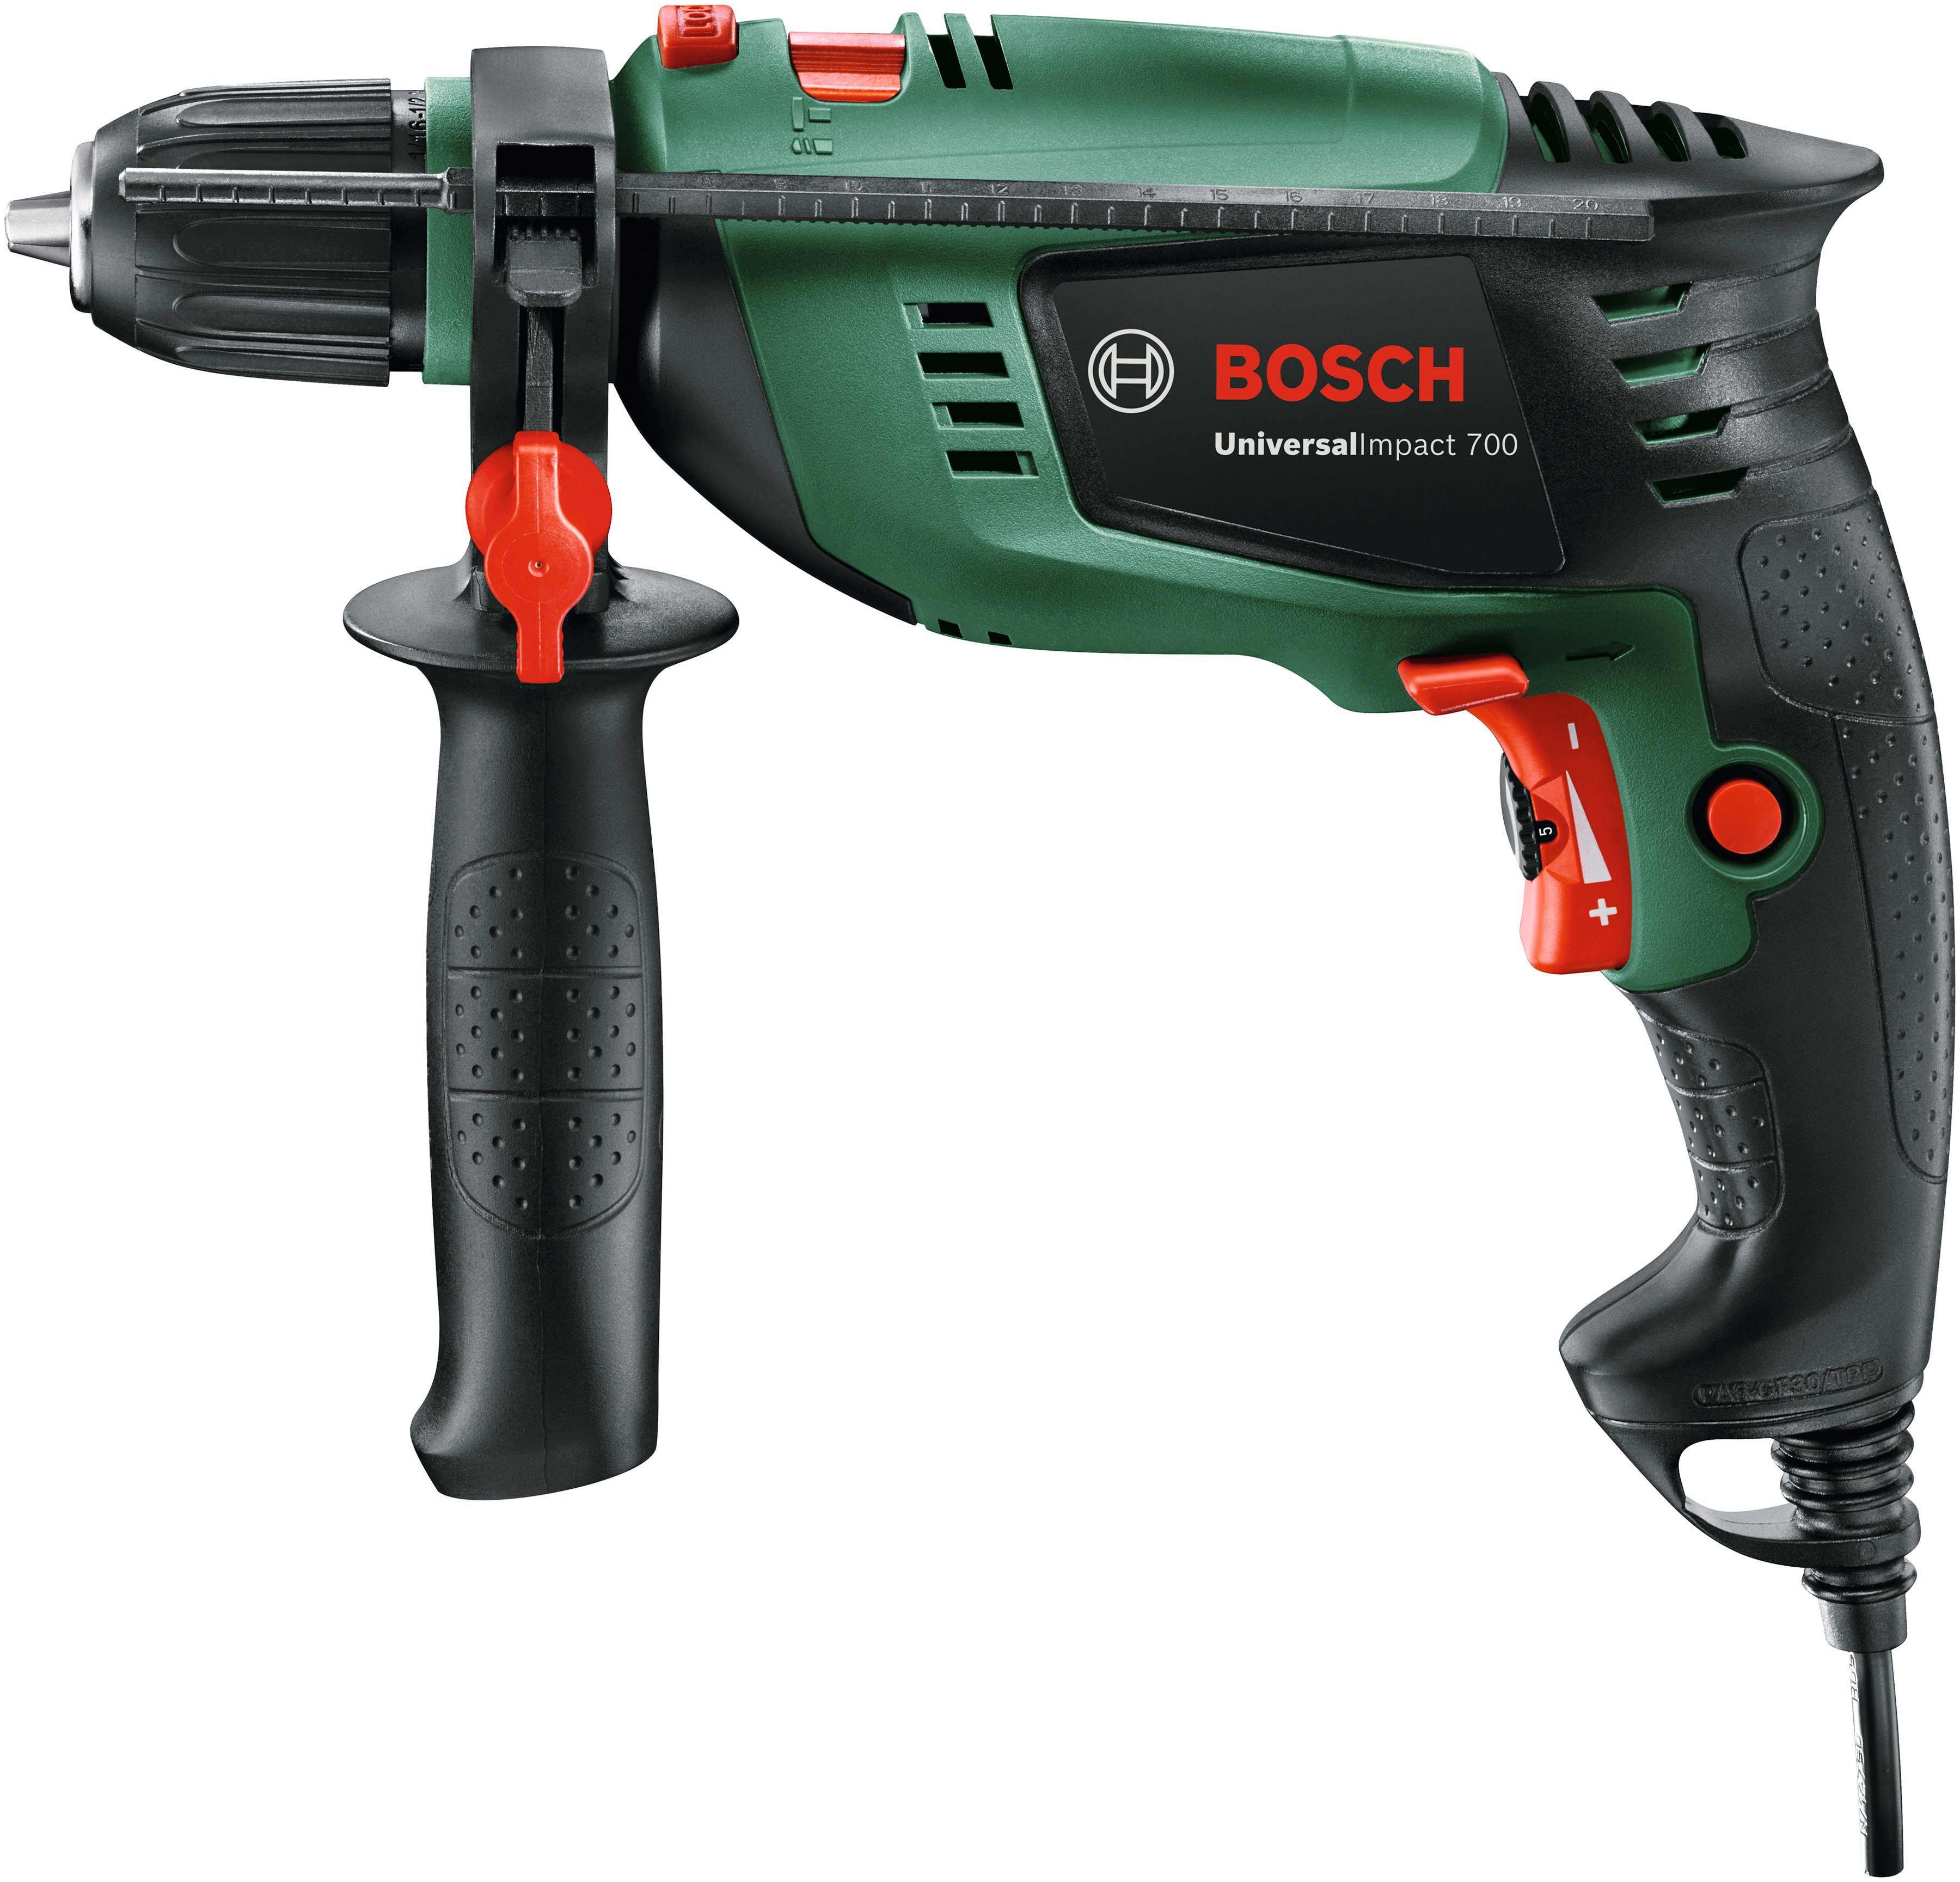 Bosch Home & 700+DA, Schlagbohrmaschine U/min 3000 UniversalImpact Garden max